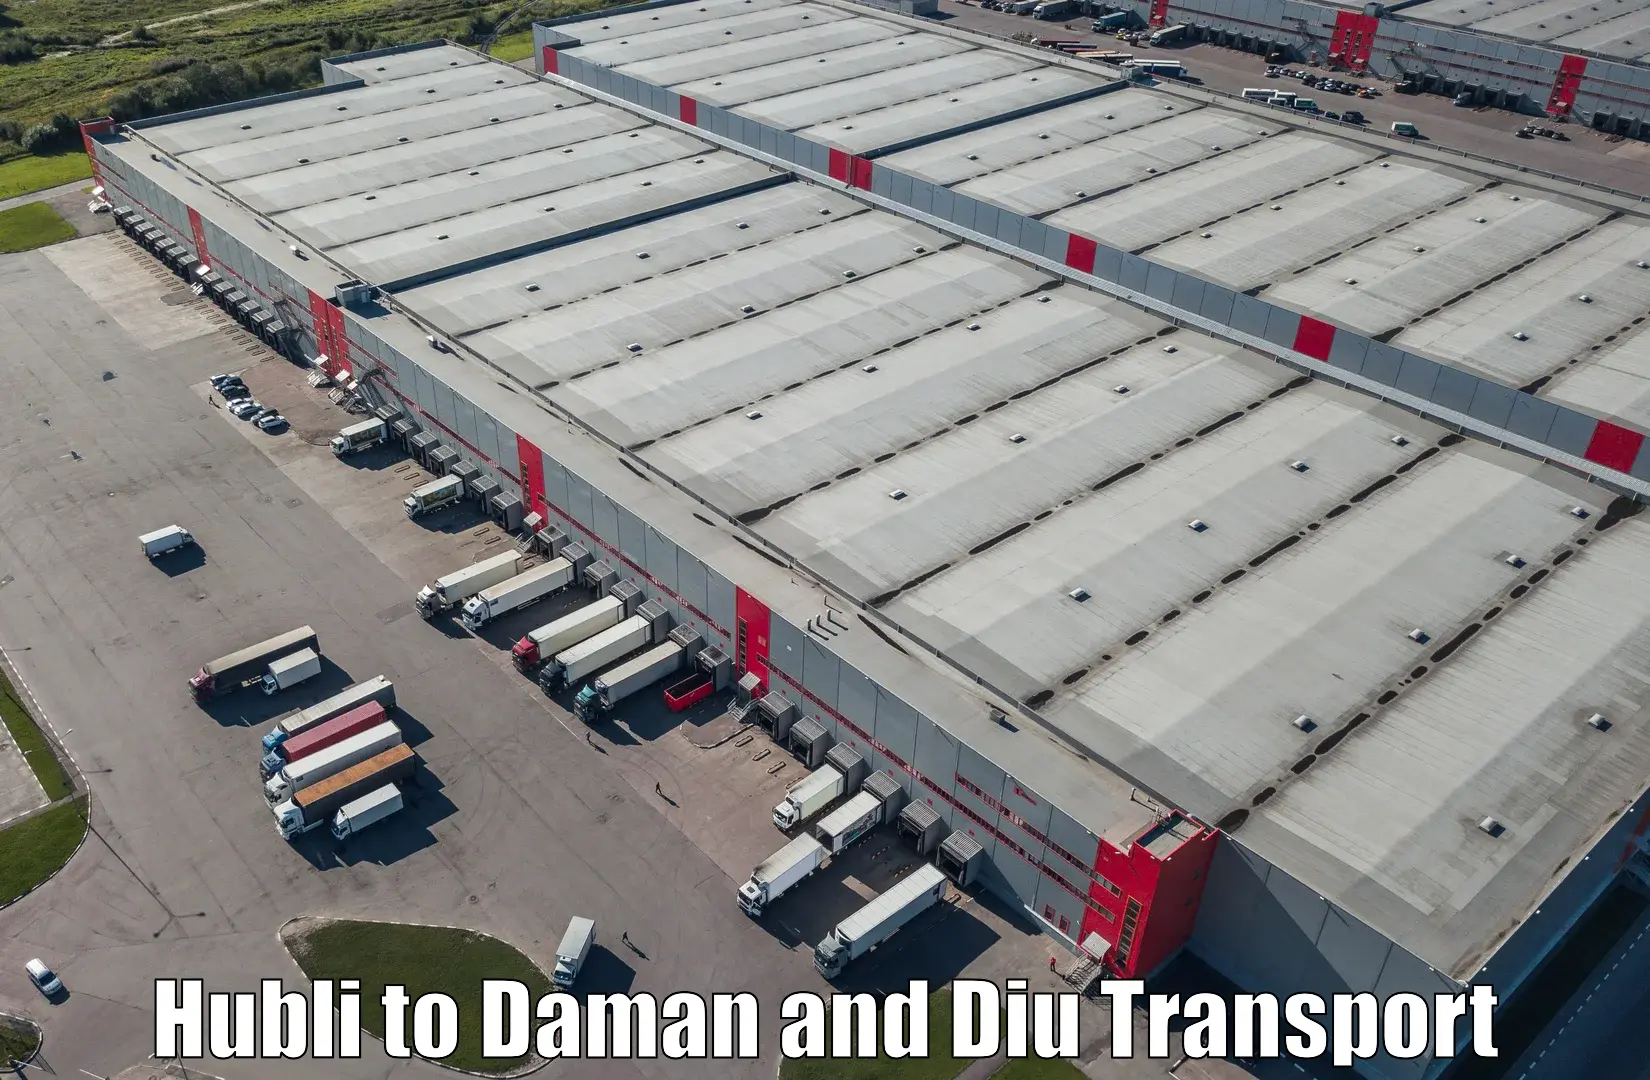 Inland transportation services Hubli to Daman and Diu